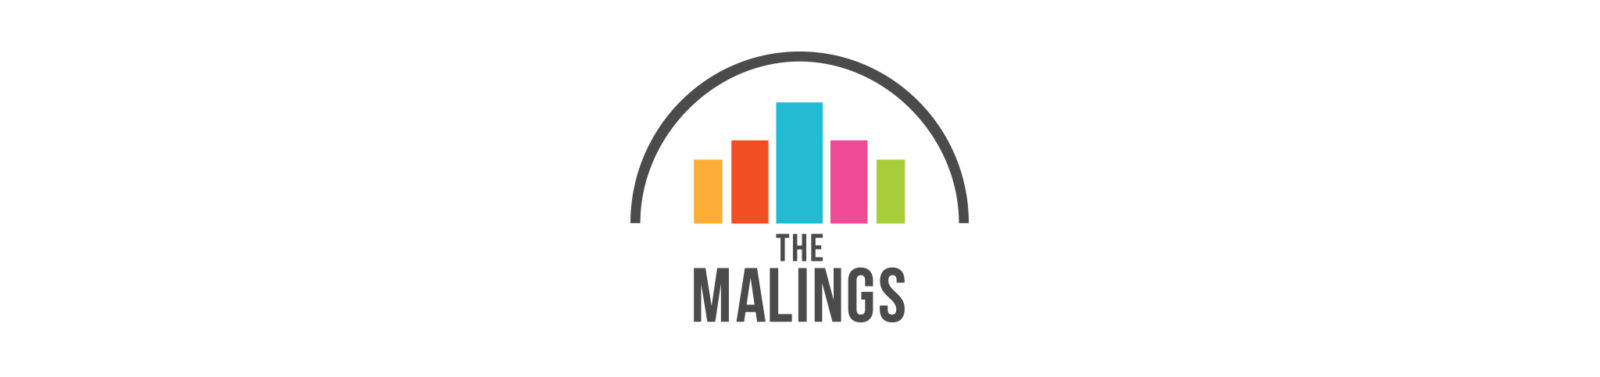 The Malings Portfolio 8